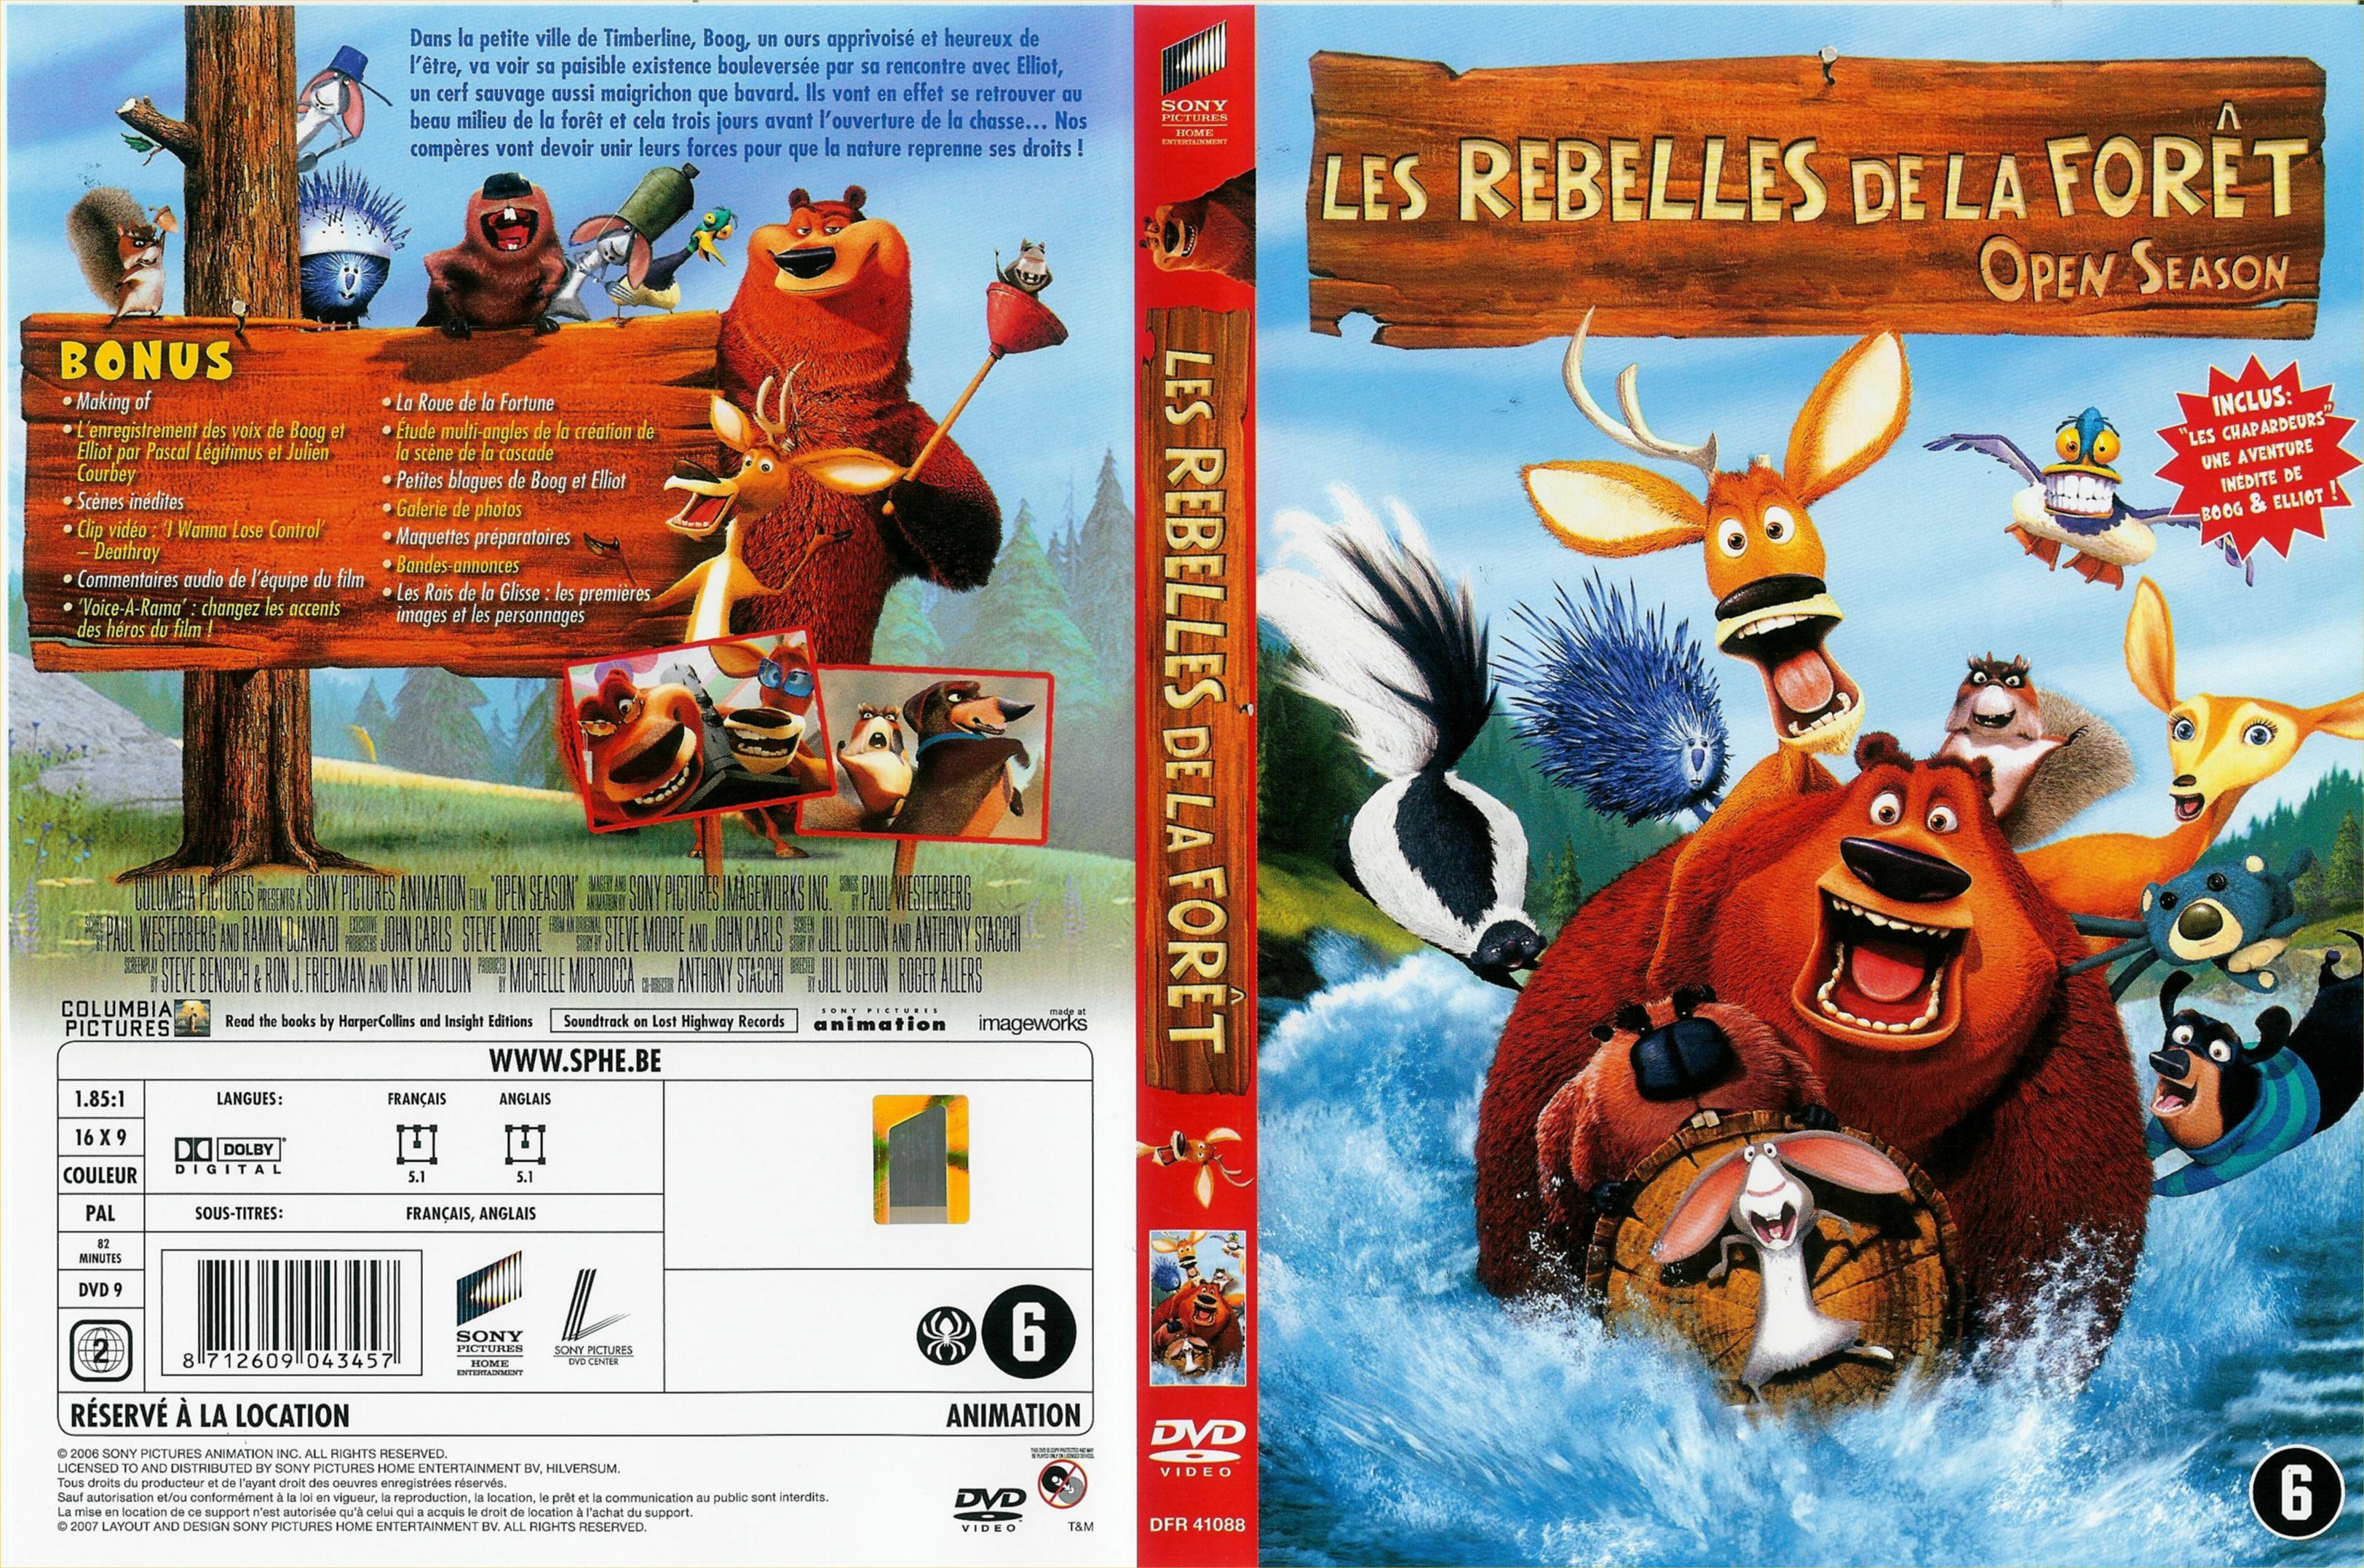 Jaquette DVD Les rebelles de la foret v3